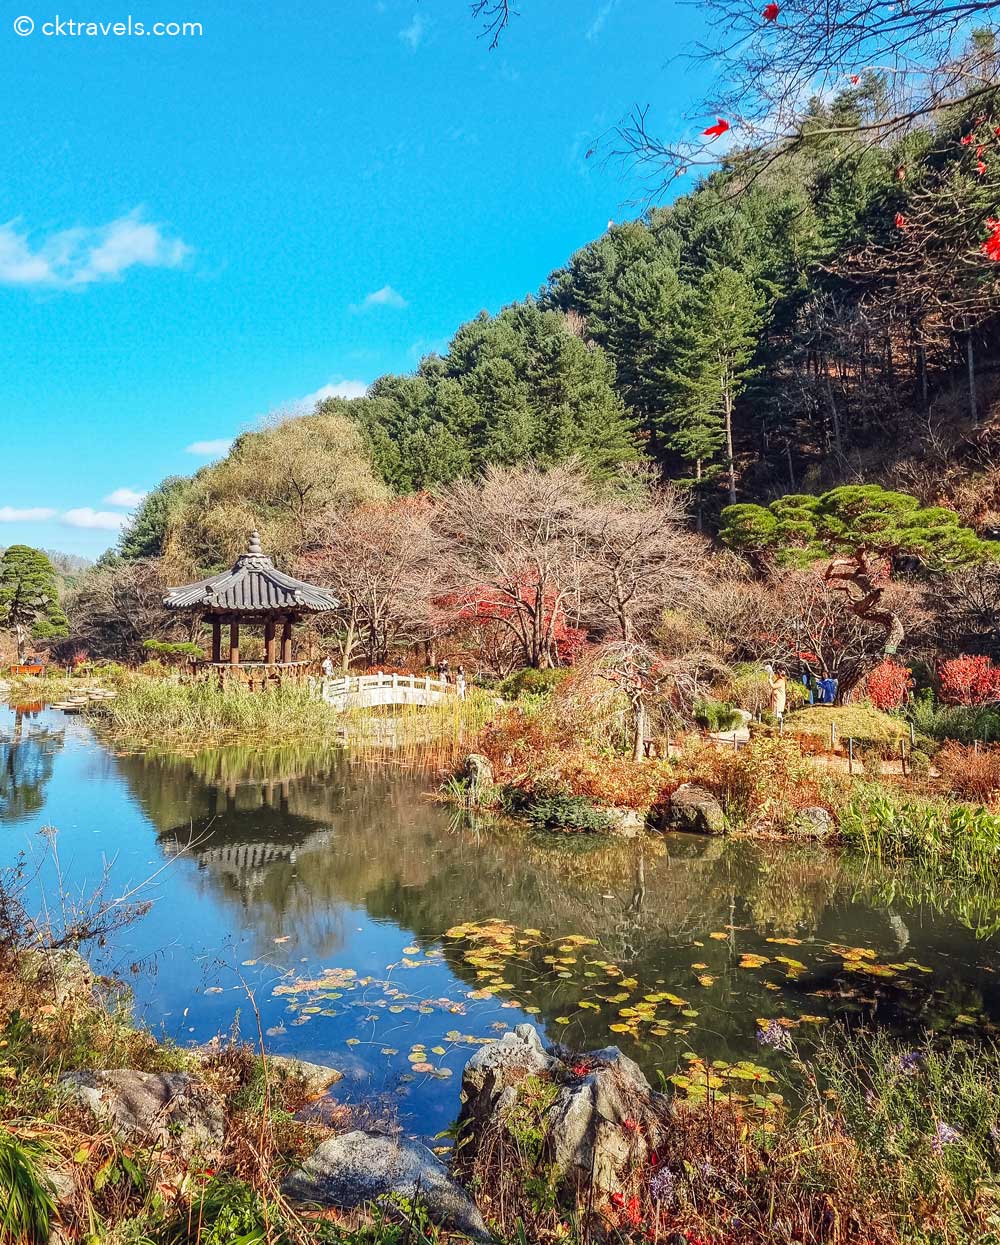 The Garden of Morning Calm near Seoul, South Korea